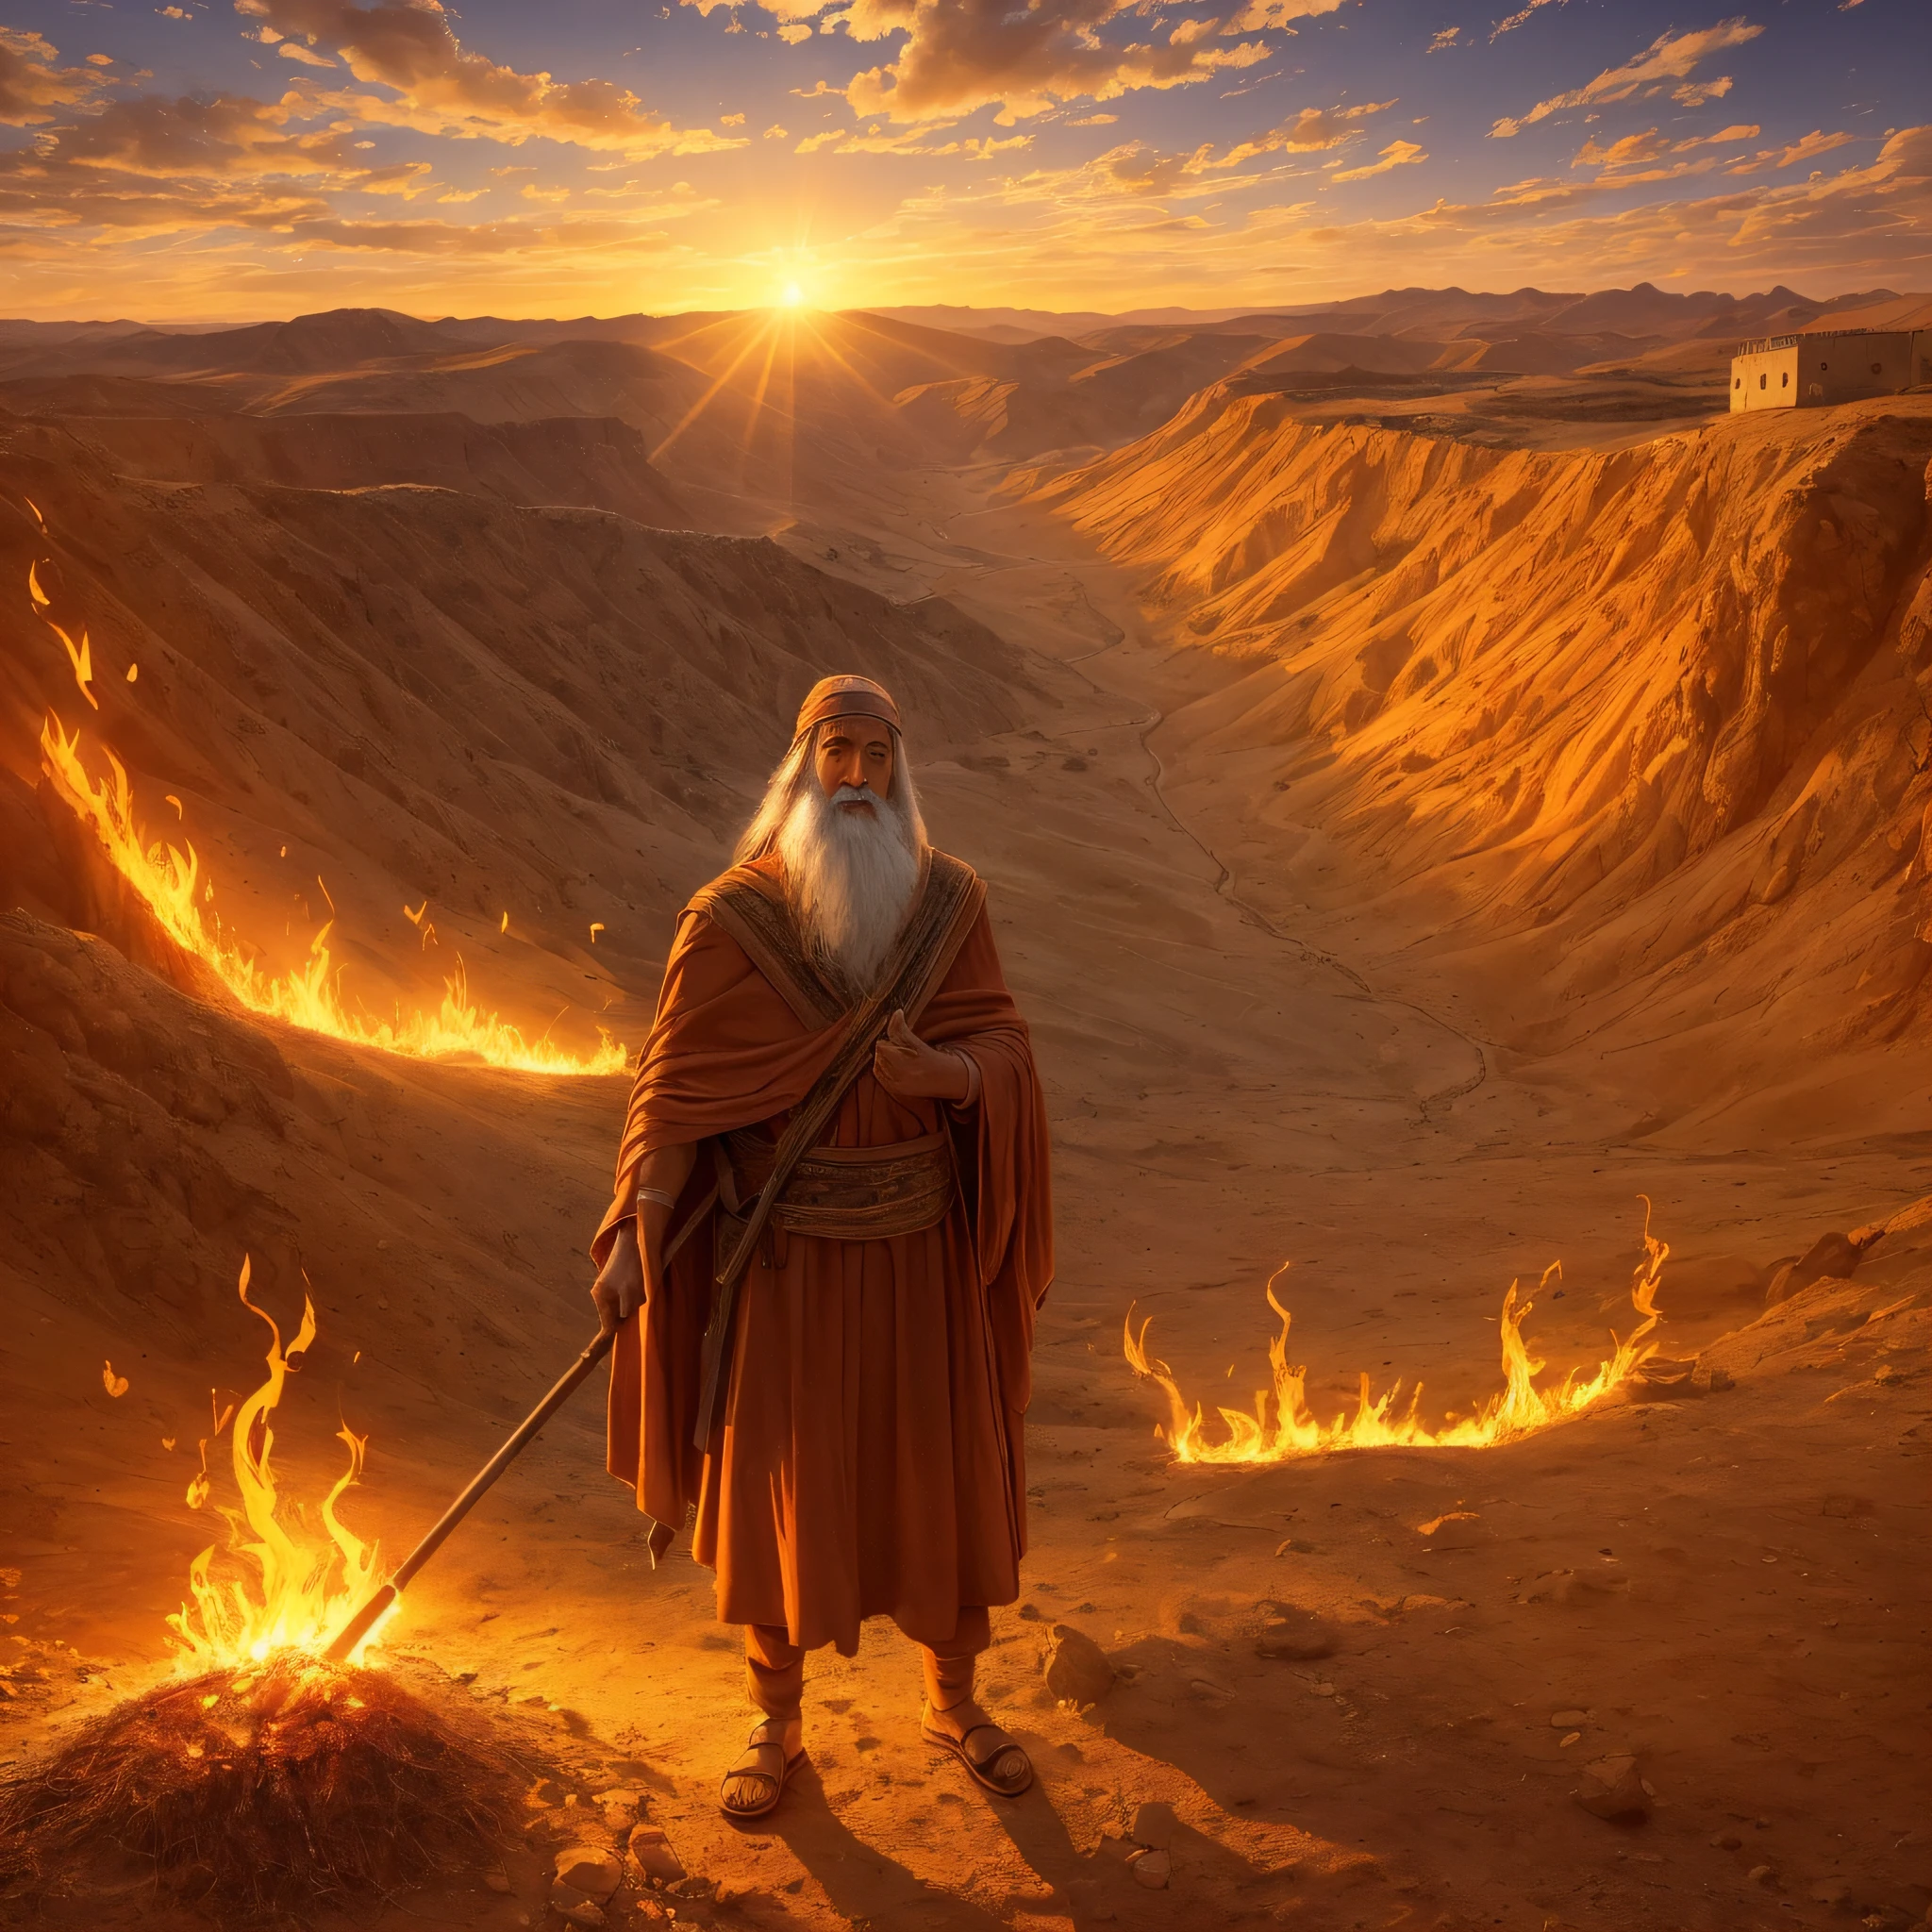 Моисей перед горящим кустом на горе Хорив. Моисей — старик, одетый как пастух.. Куст светлый, яркое пламя, но он не сгорает в огне. Моисей с изумлением и восхищением смотрит на куст. Окружающая среда гористая и пустынная., с заходом солнца и освещением сцены оранжевым светом. На этом изображении изображен момент, когда Бог призывает Моисея спасти народ Израиля.. --auto --s2